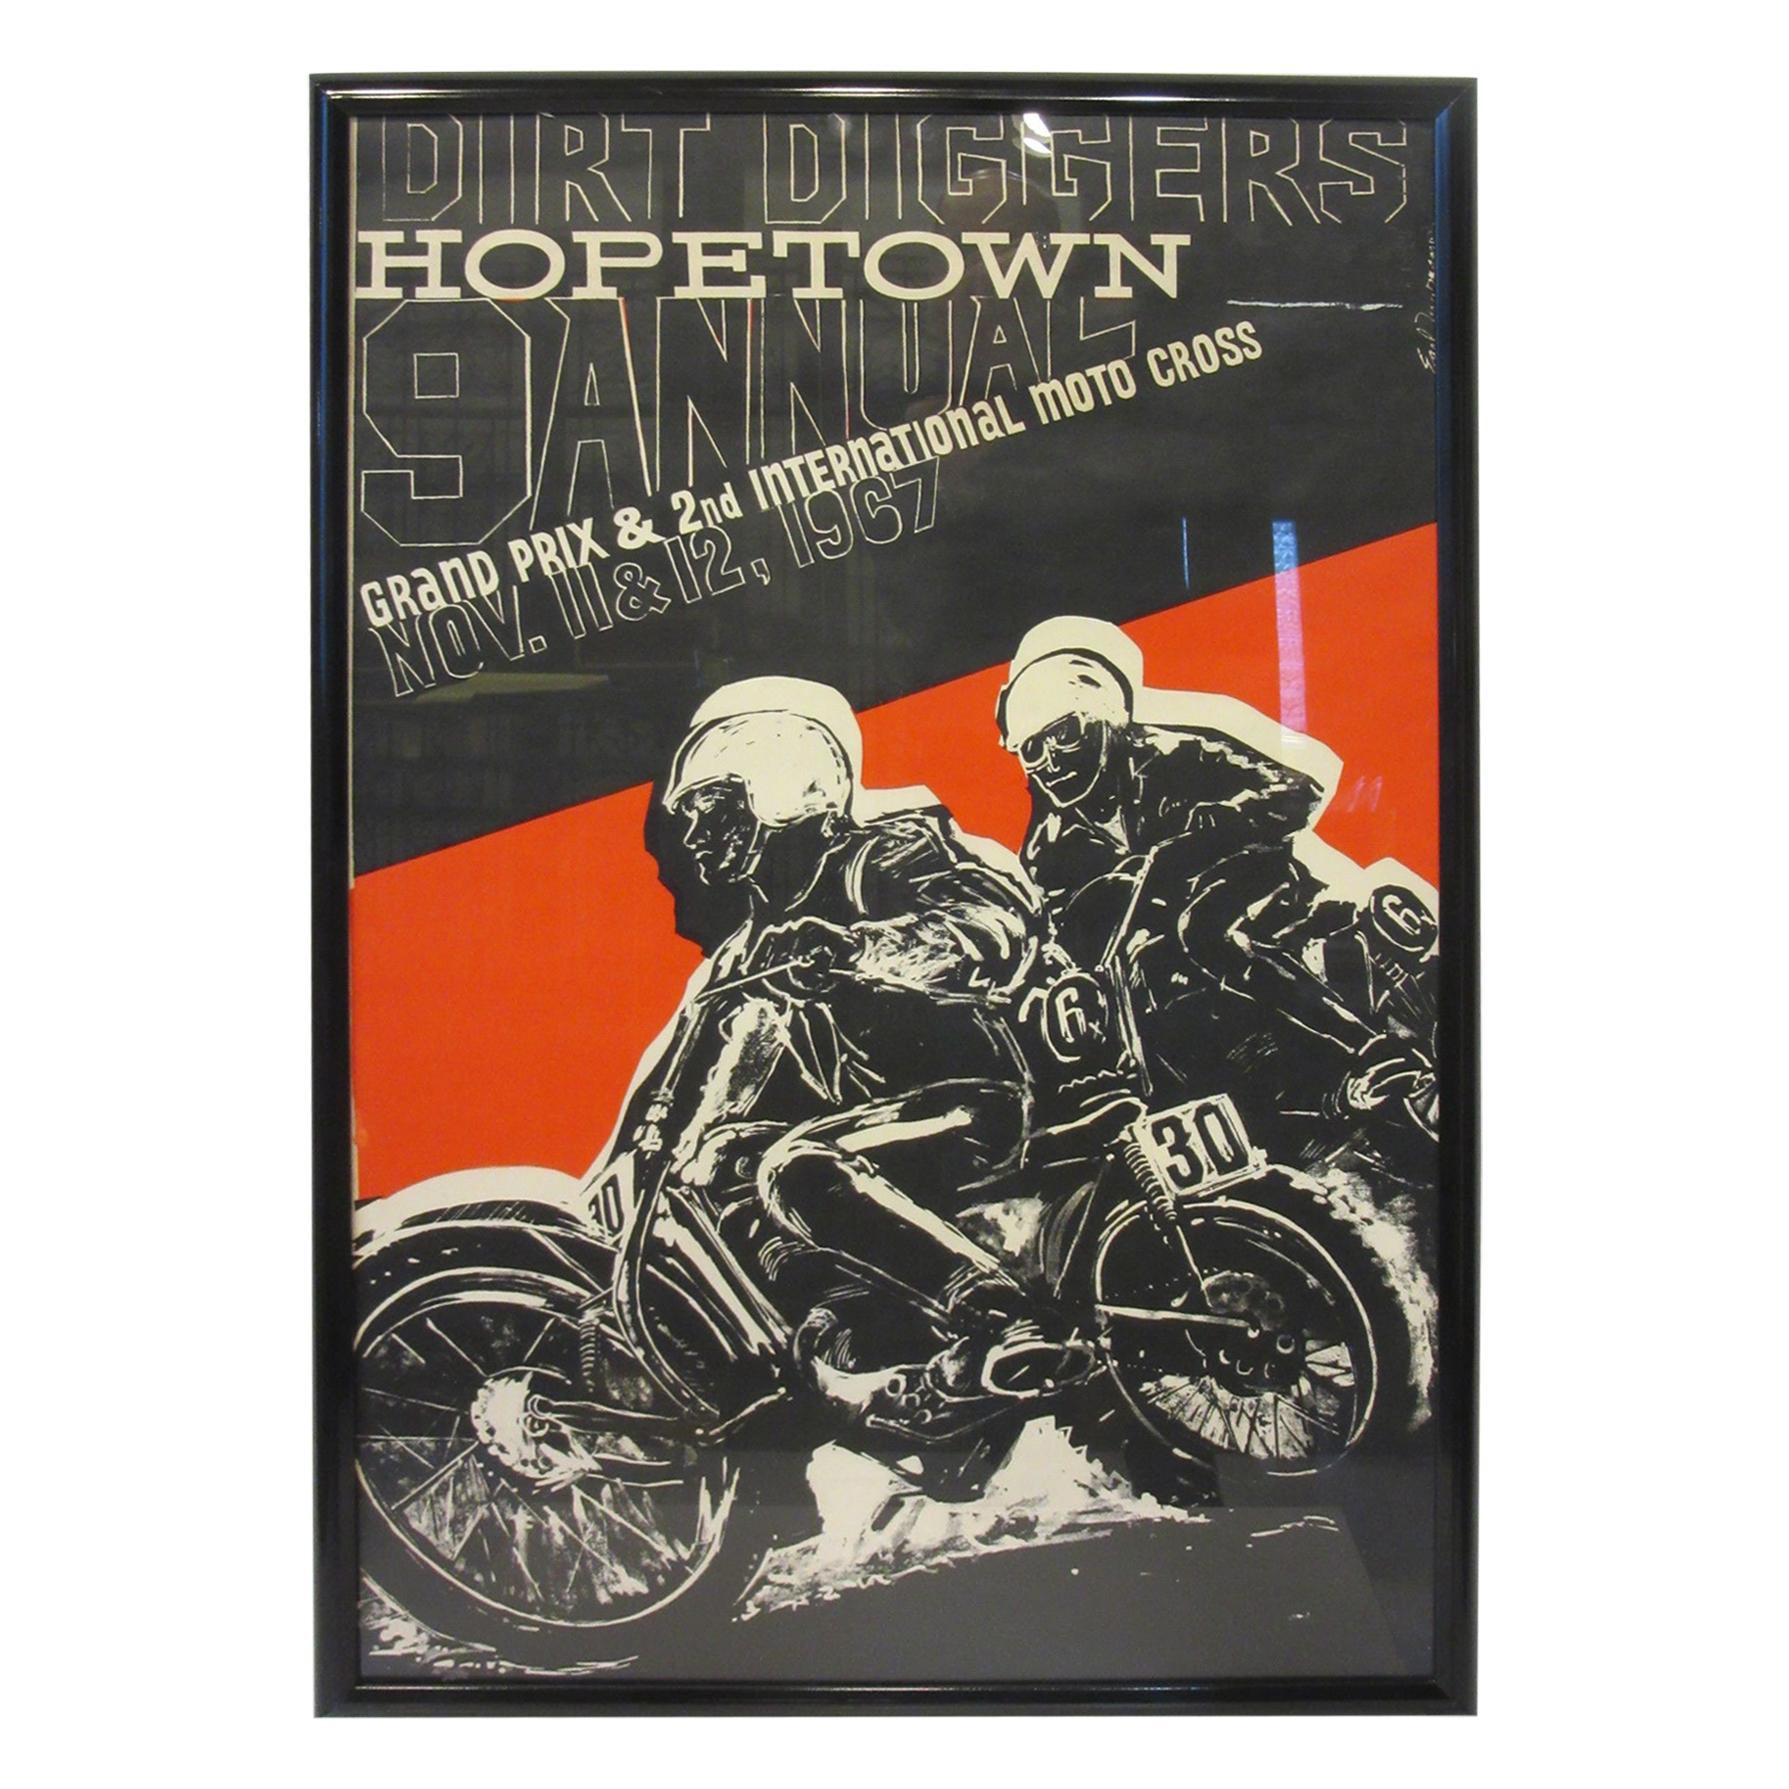 affiche du Moto Cross international de Hopetown 1967 par Earl Newman